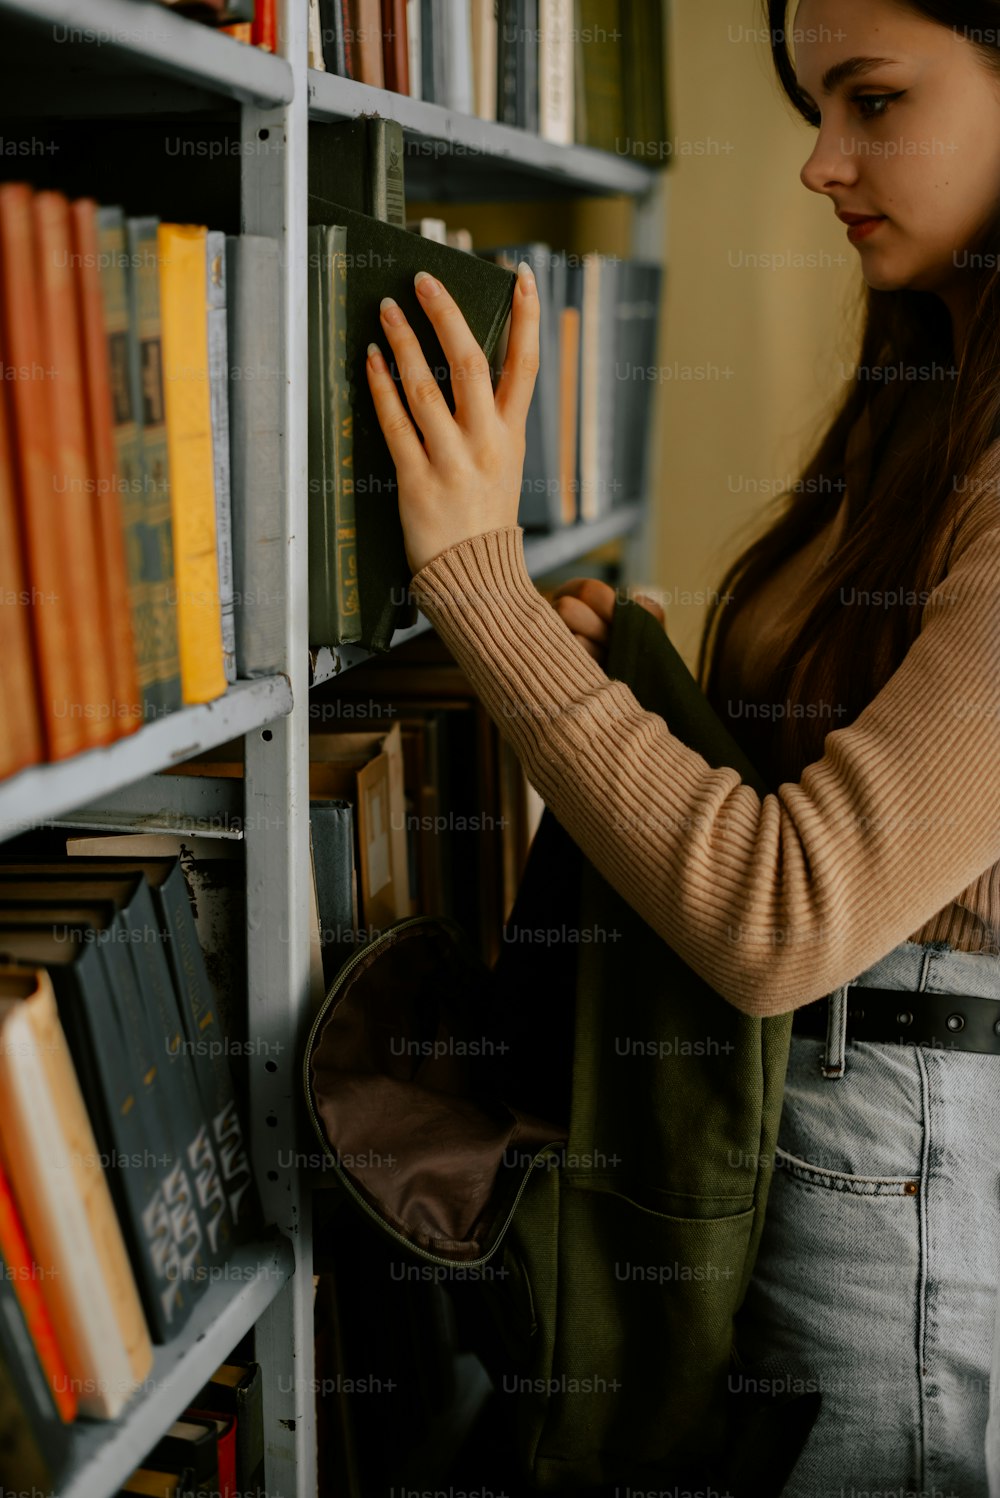 Uma mulher está olhando para livros em uma estante de livros